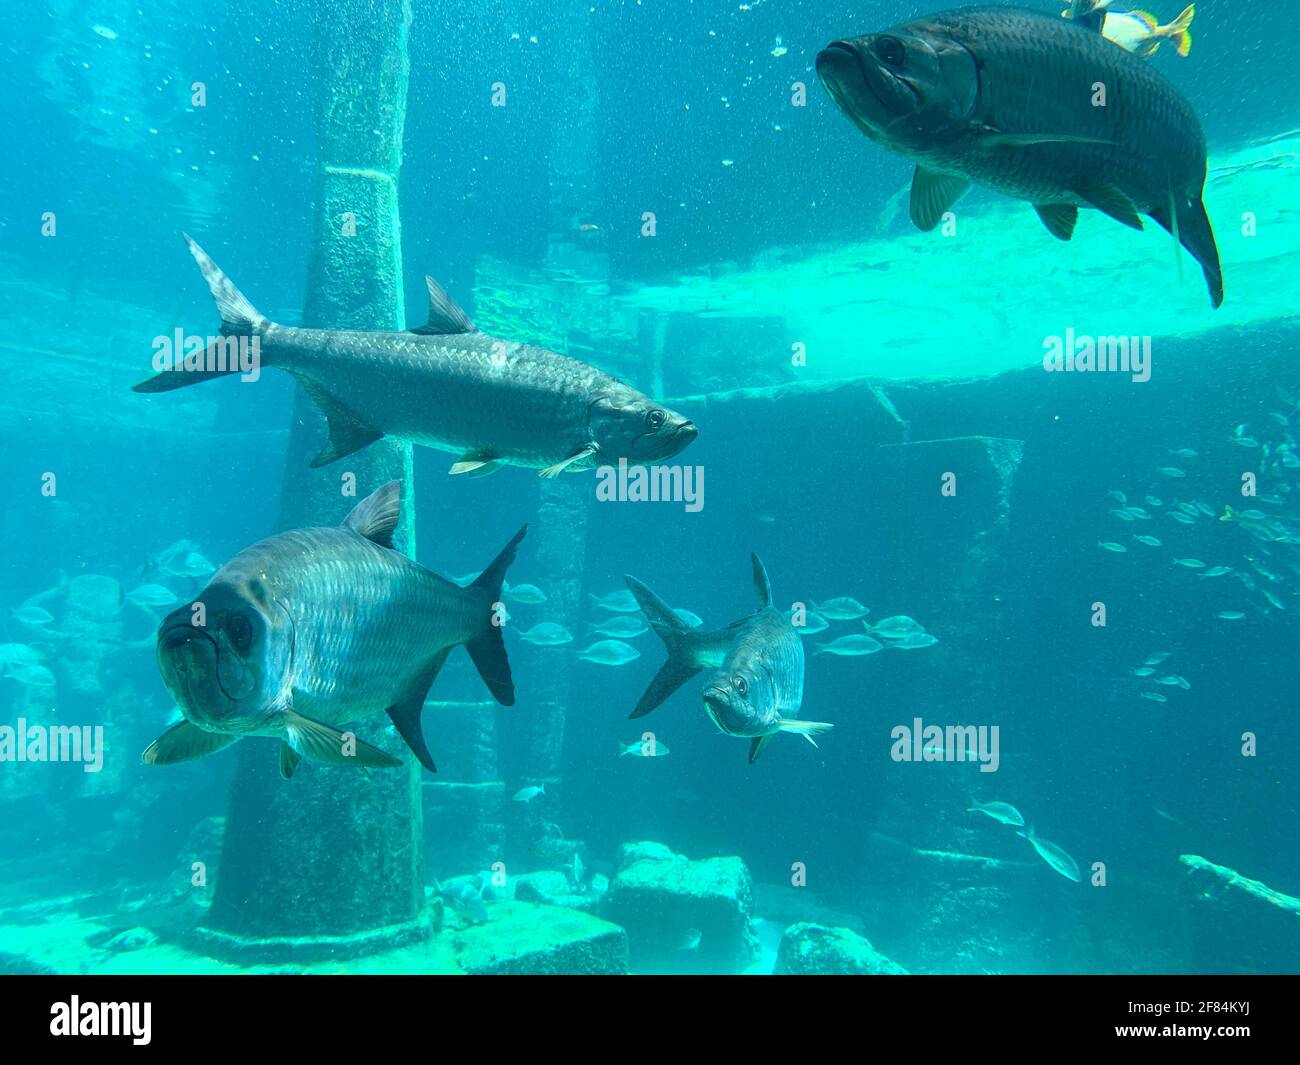 Fish swimming in a large aquarium Stock Photo